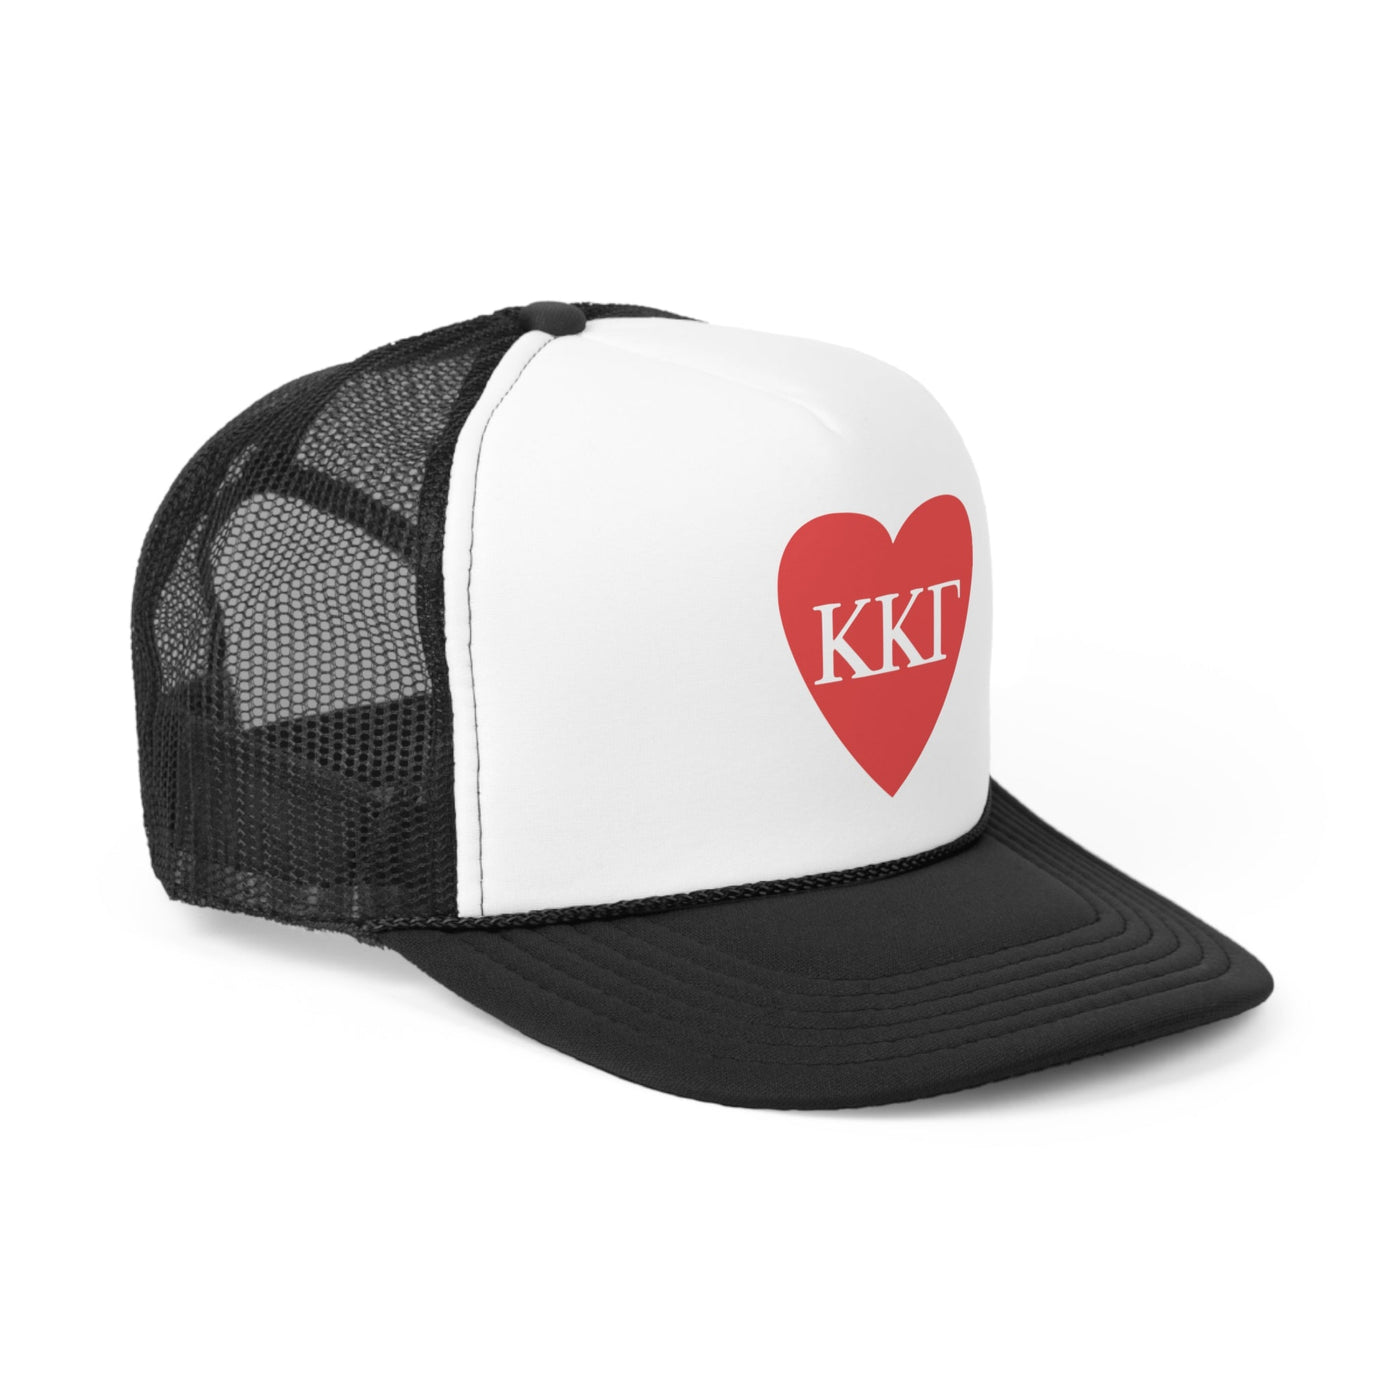 Kappa Kappa Gamma Heart Letters Sorority Foam Trucker Hat